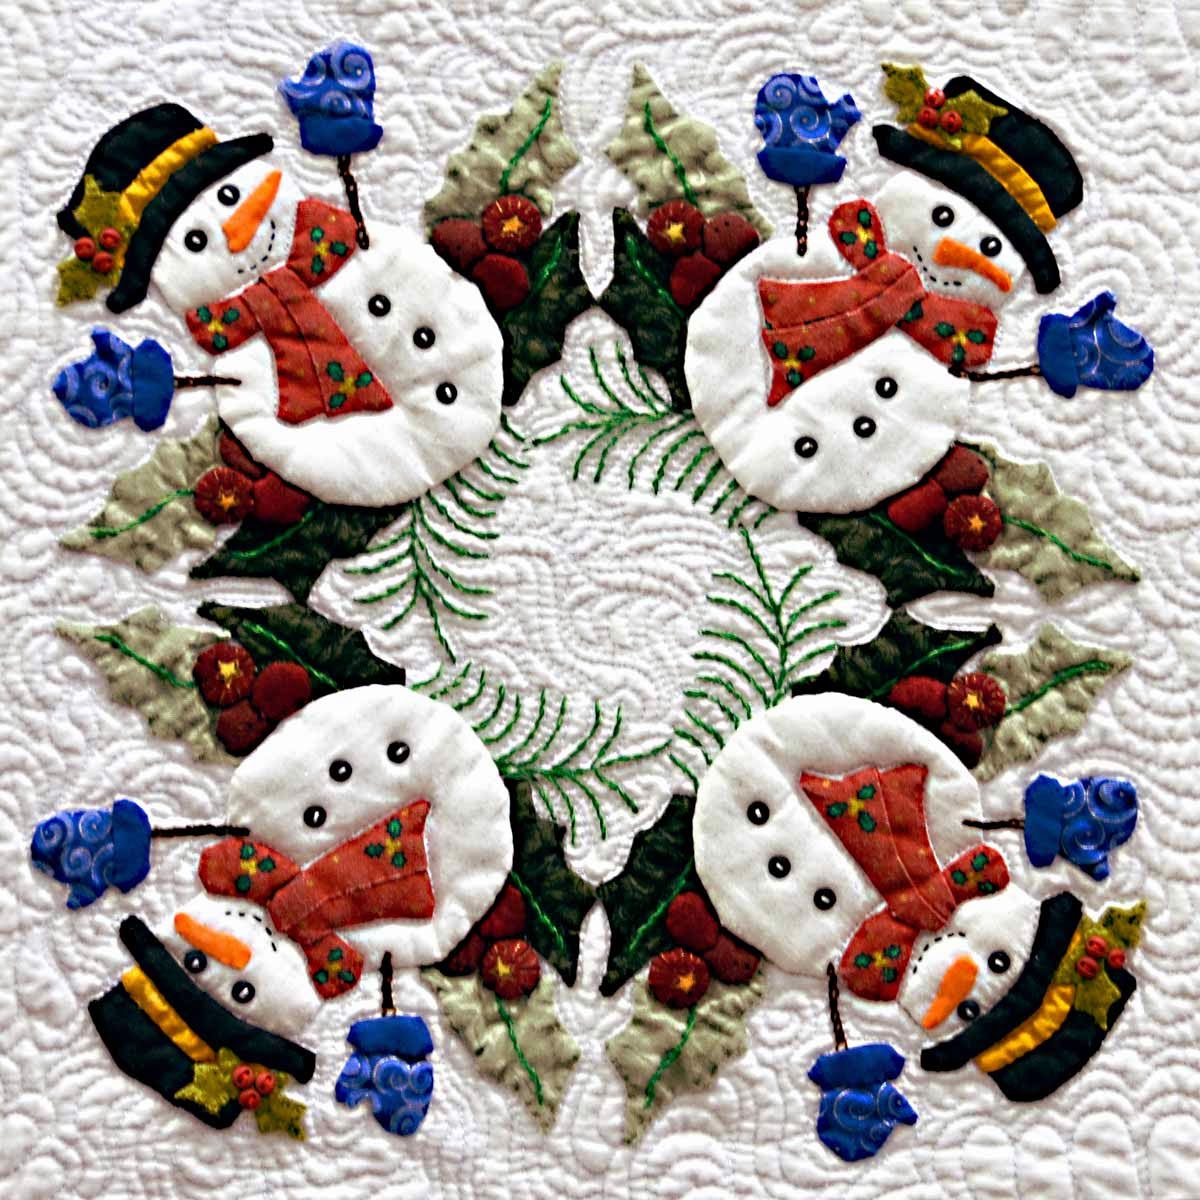 Applique Christmas snowman quilt block by Miriam L Meier